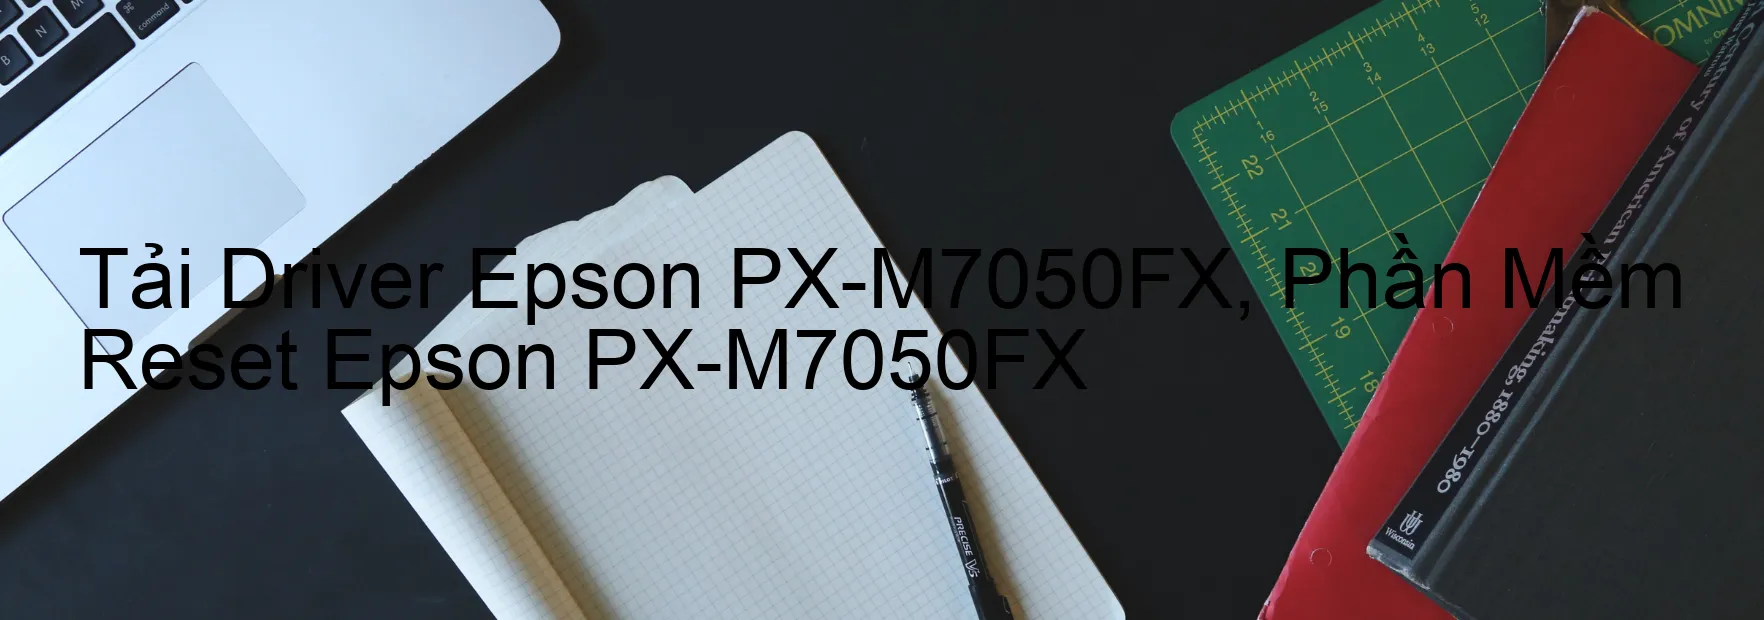 Driver Epson PX-M7050FX, Phần Mềm Reset Epson PX-M7050FX